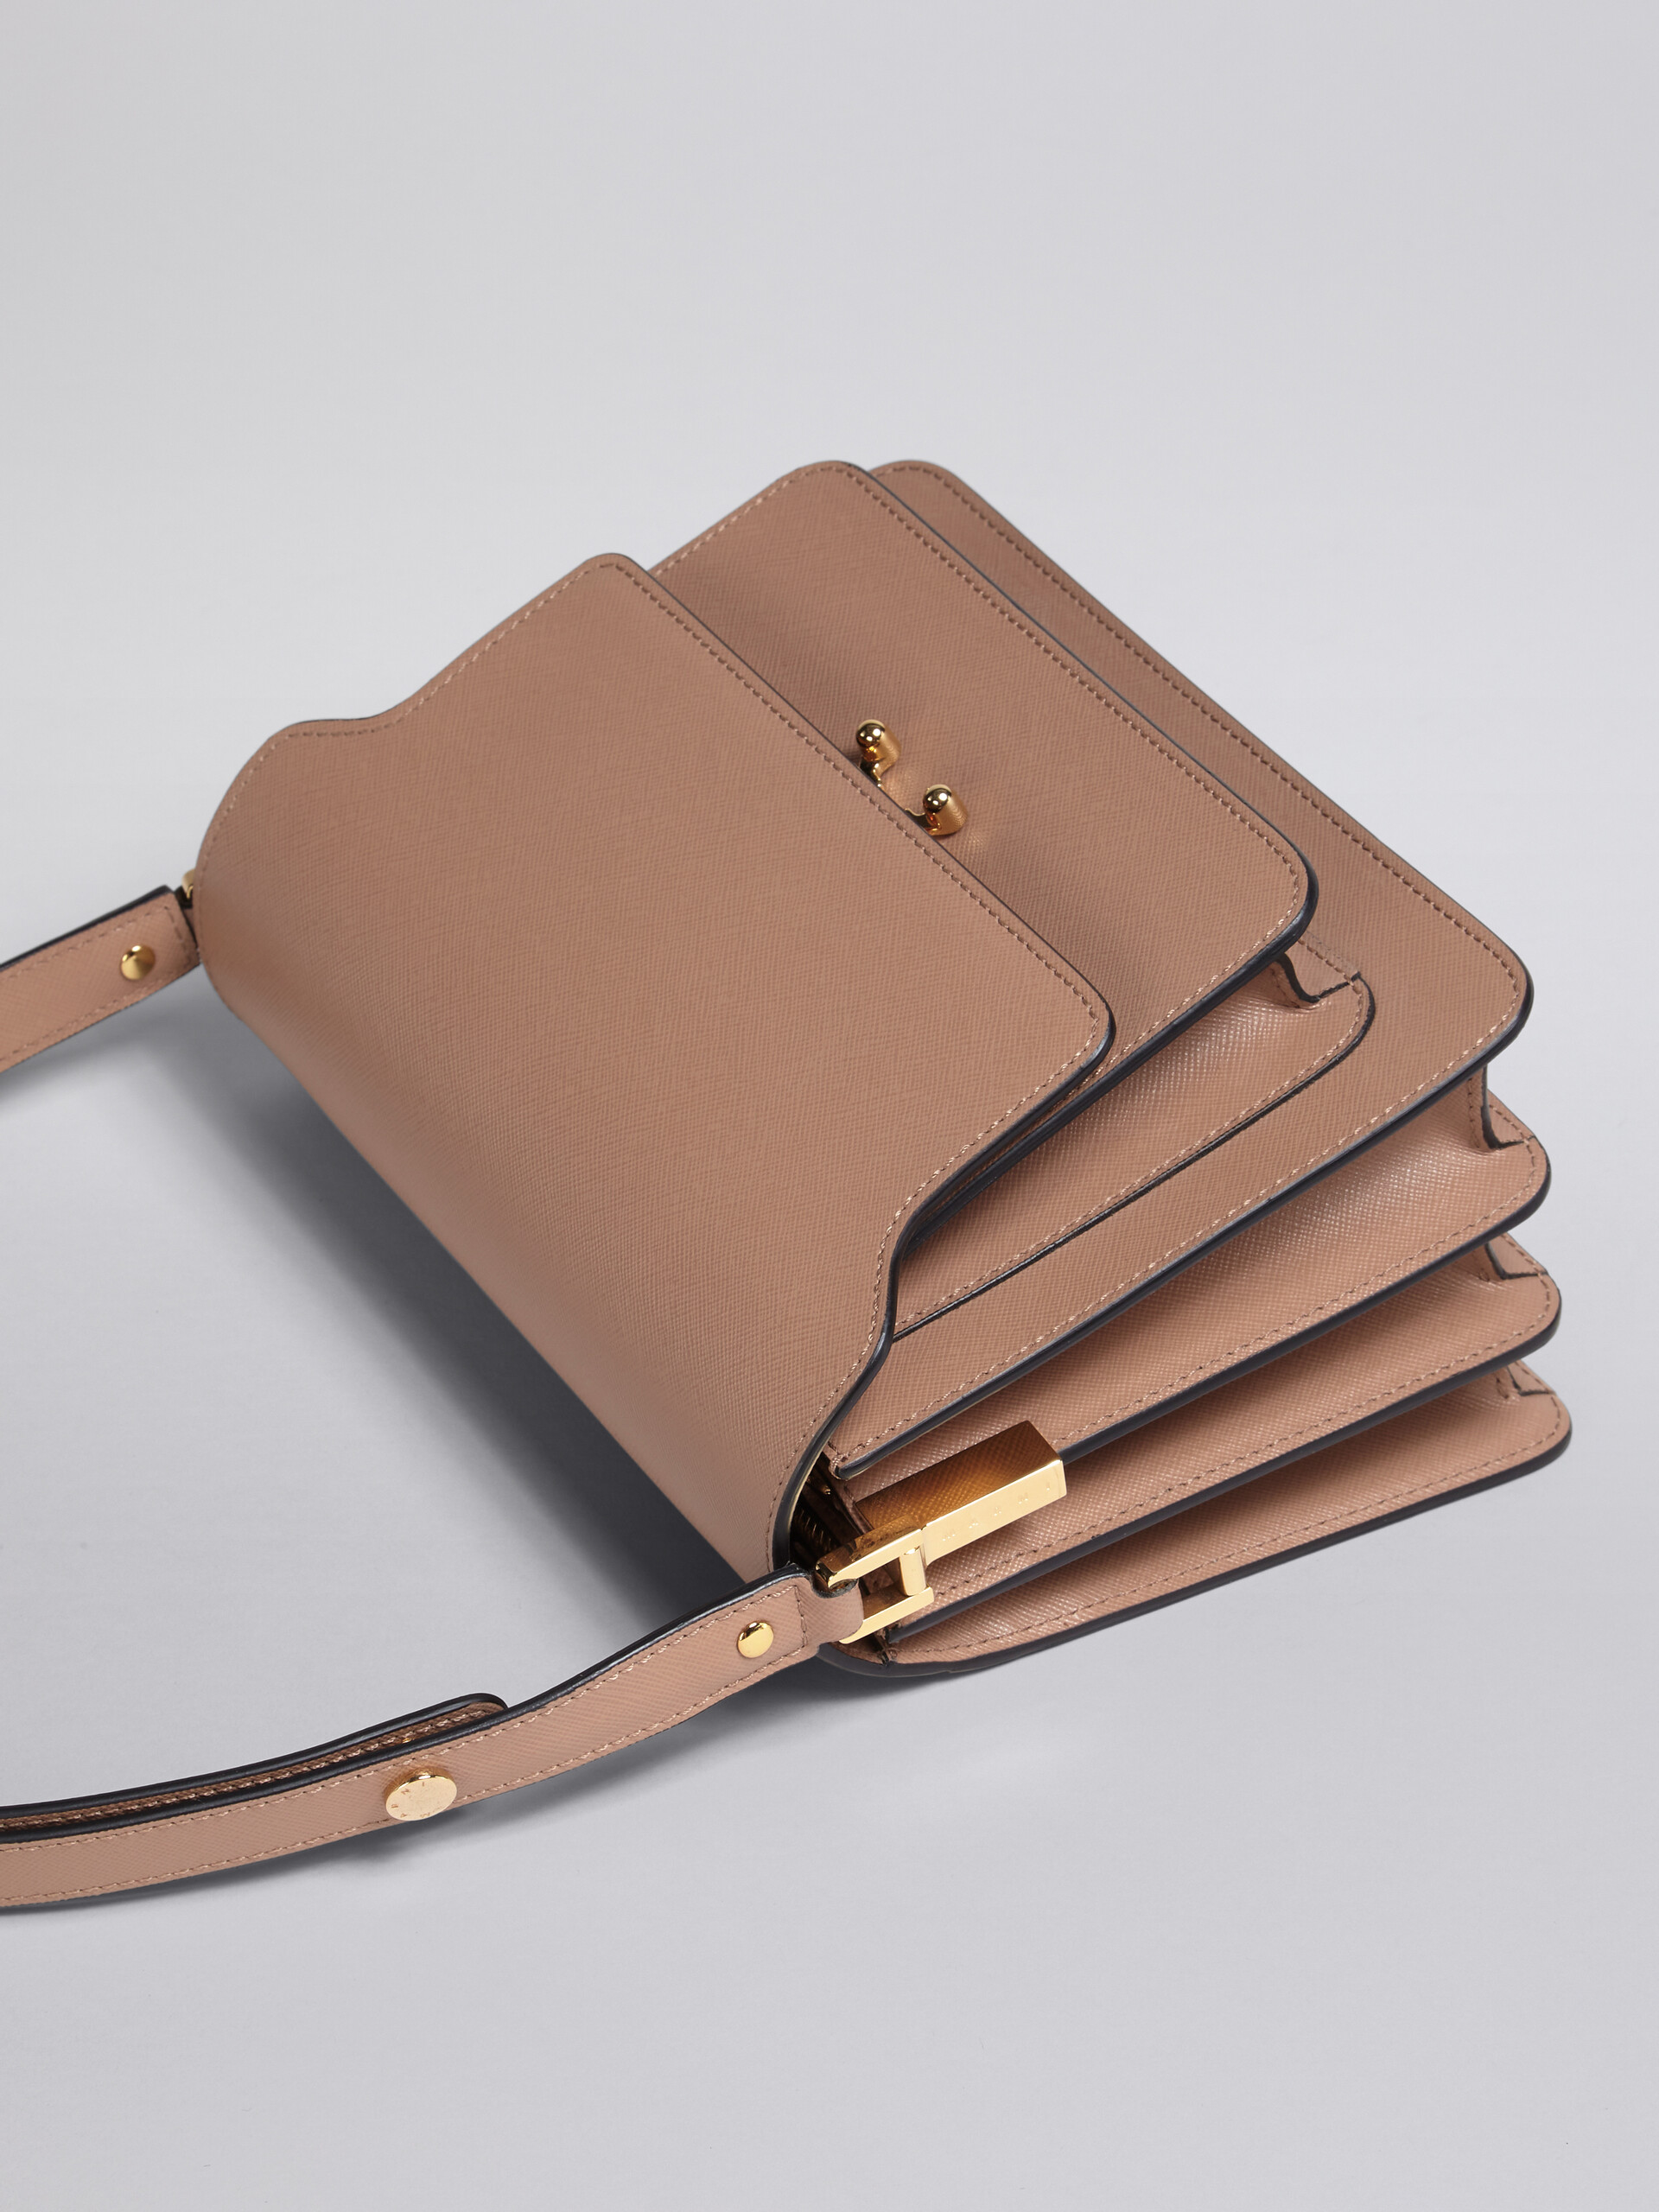 TRUNK medium bag in grey saffiano leather - Shoulder Bag - Image 4